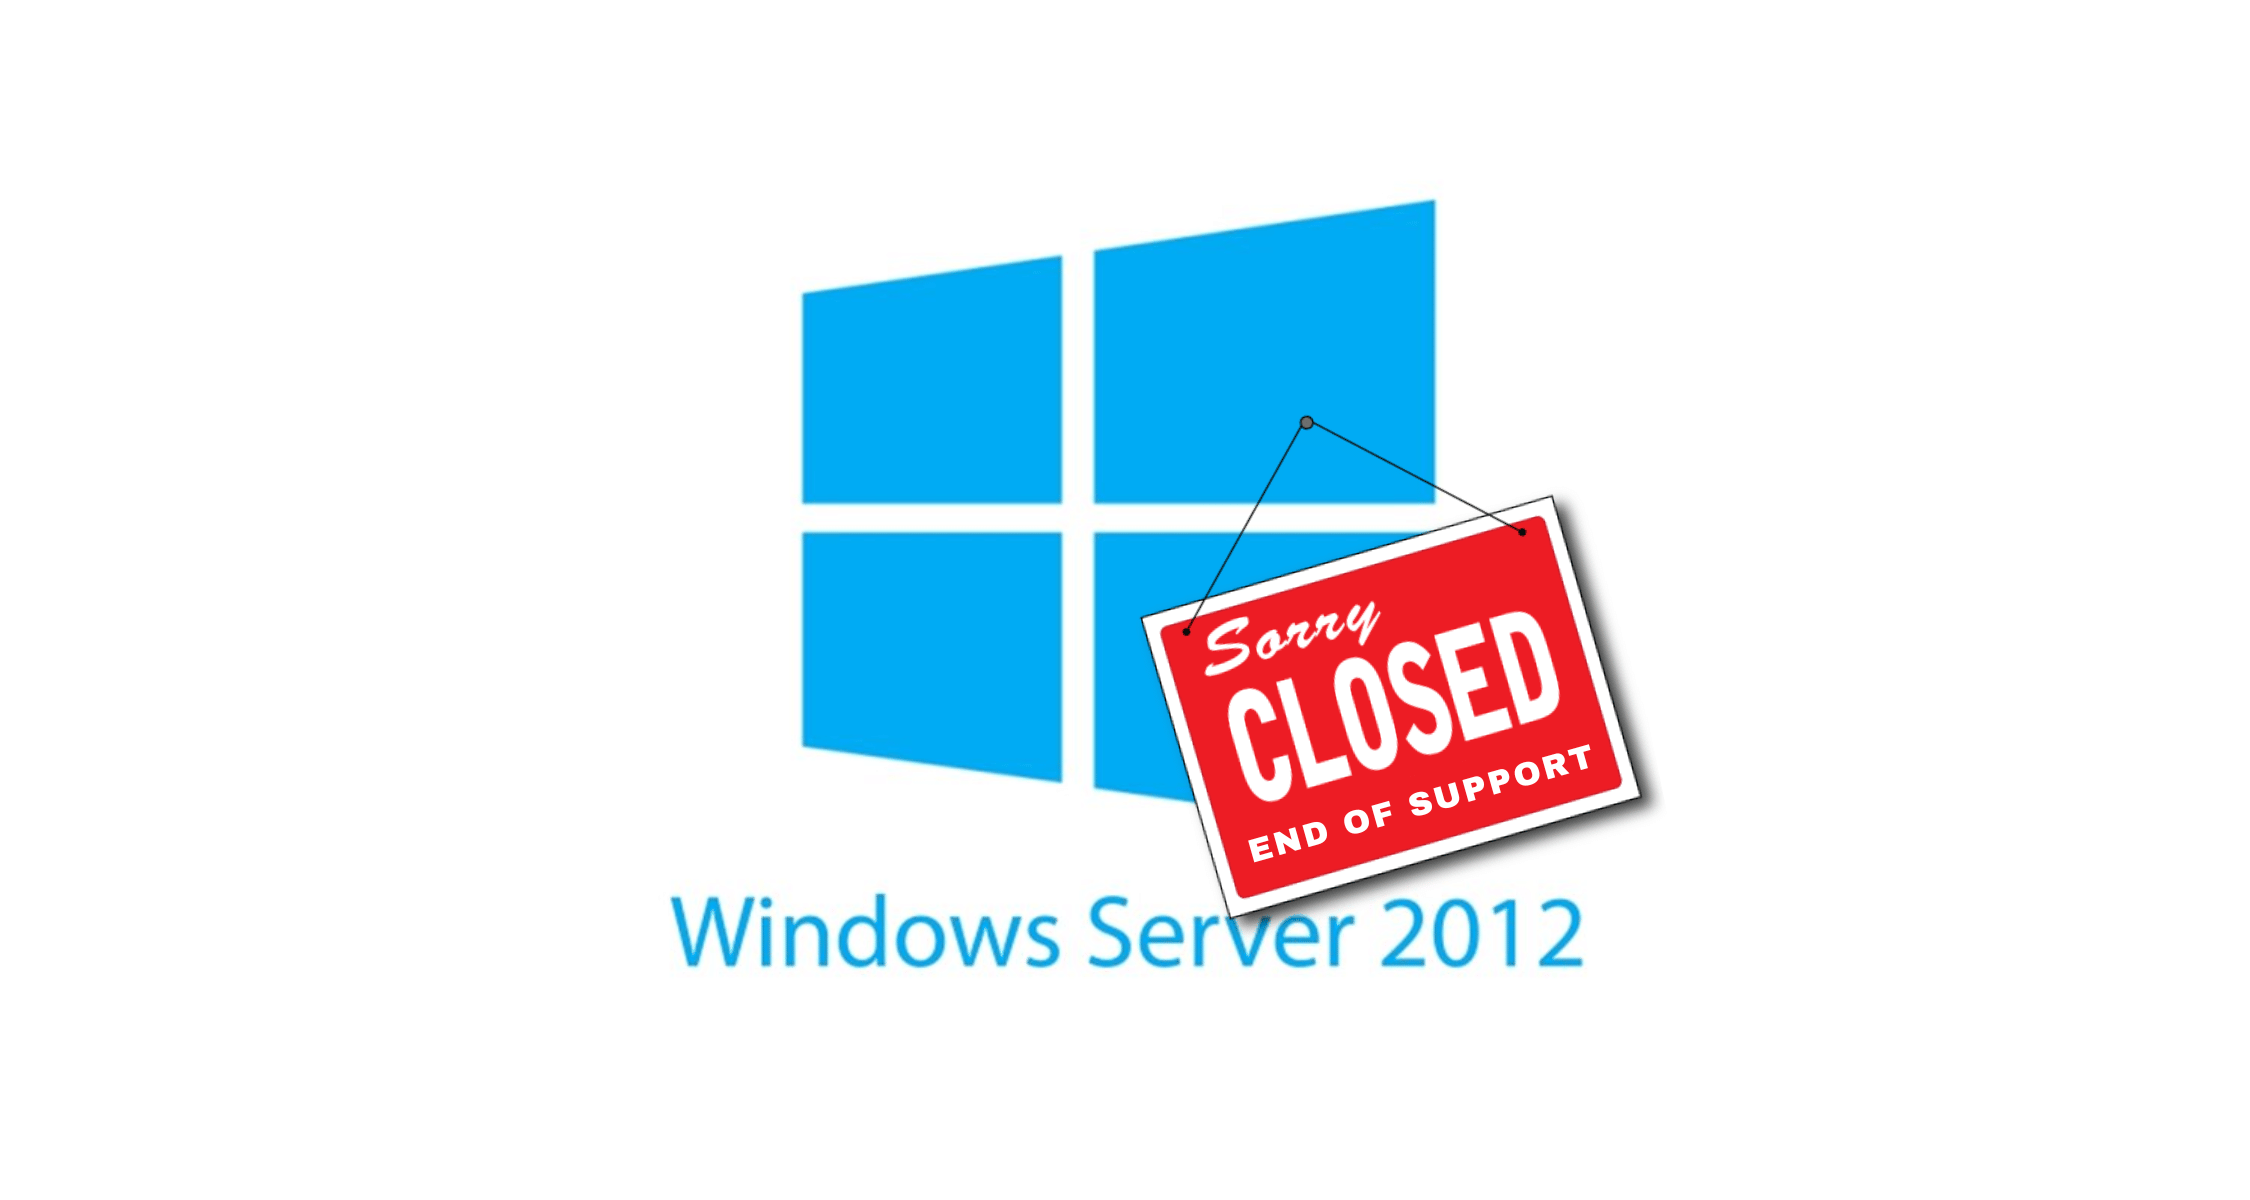 Il logo di Microsoft Windows Server 2012 con appeso il cartello "Closed - End of support"